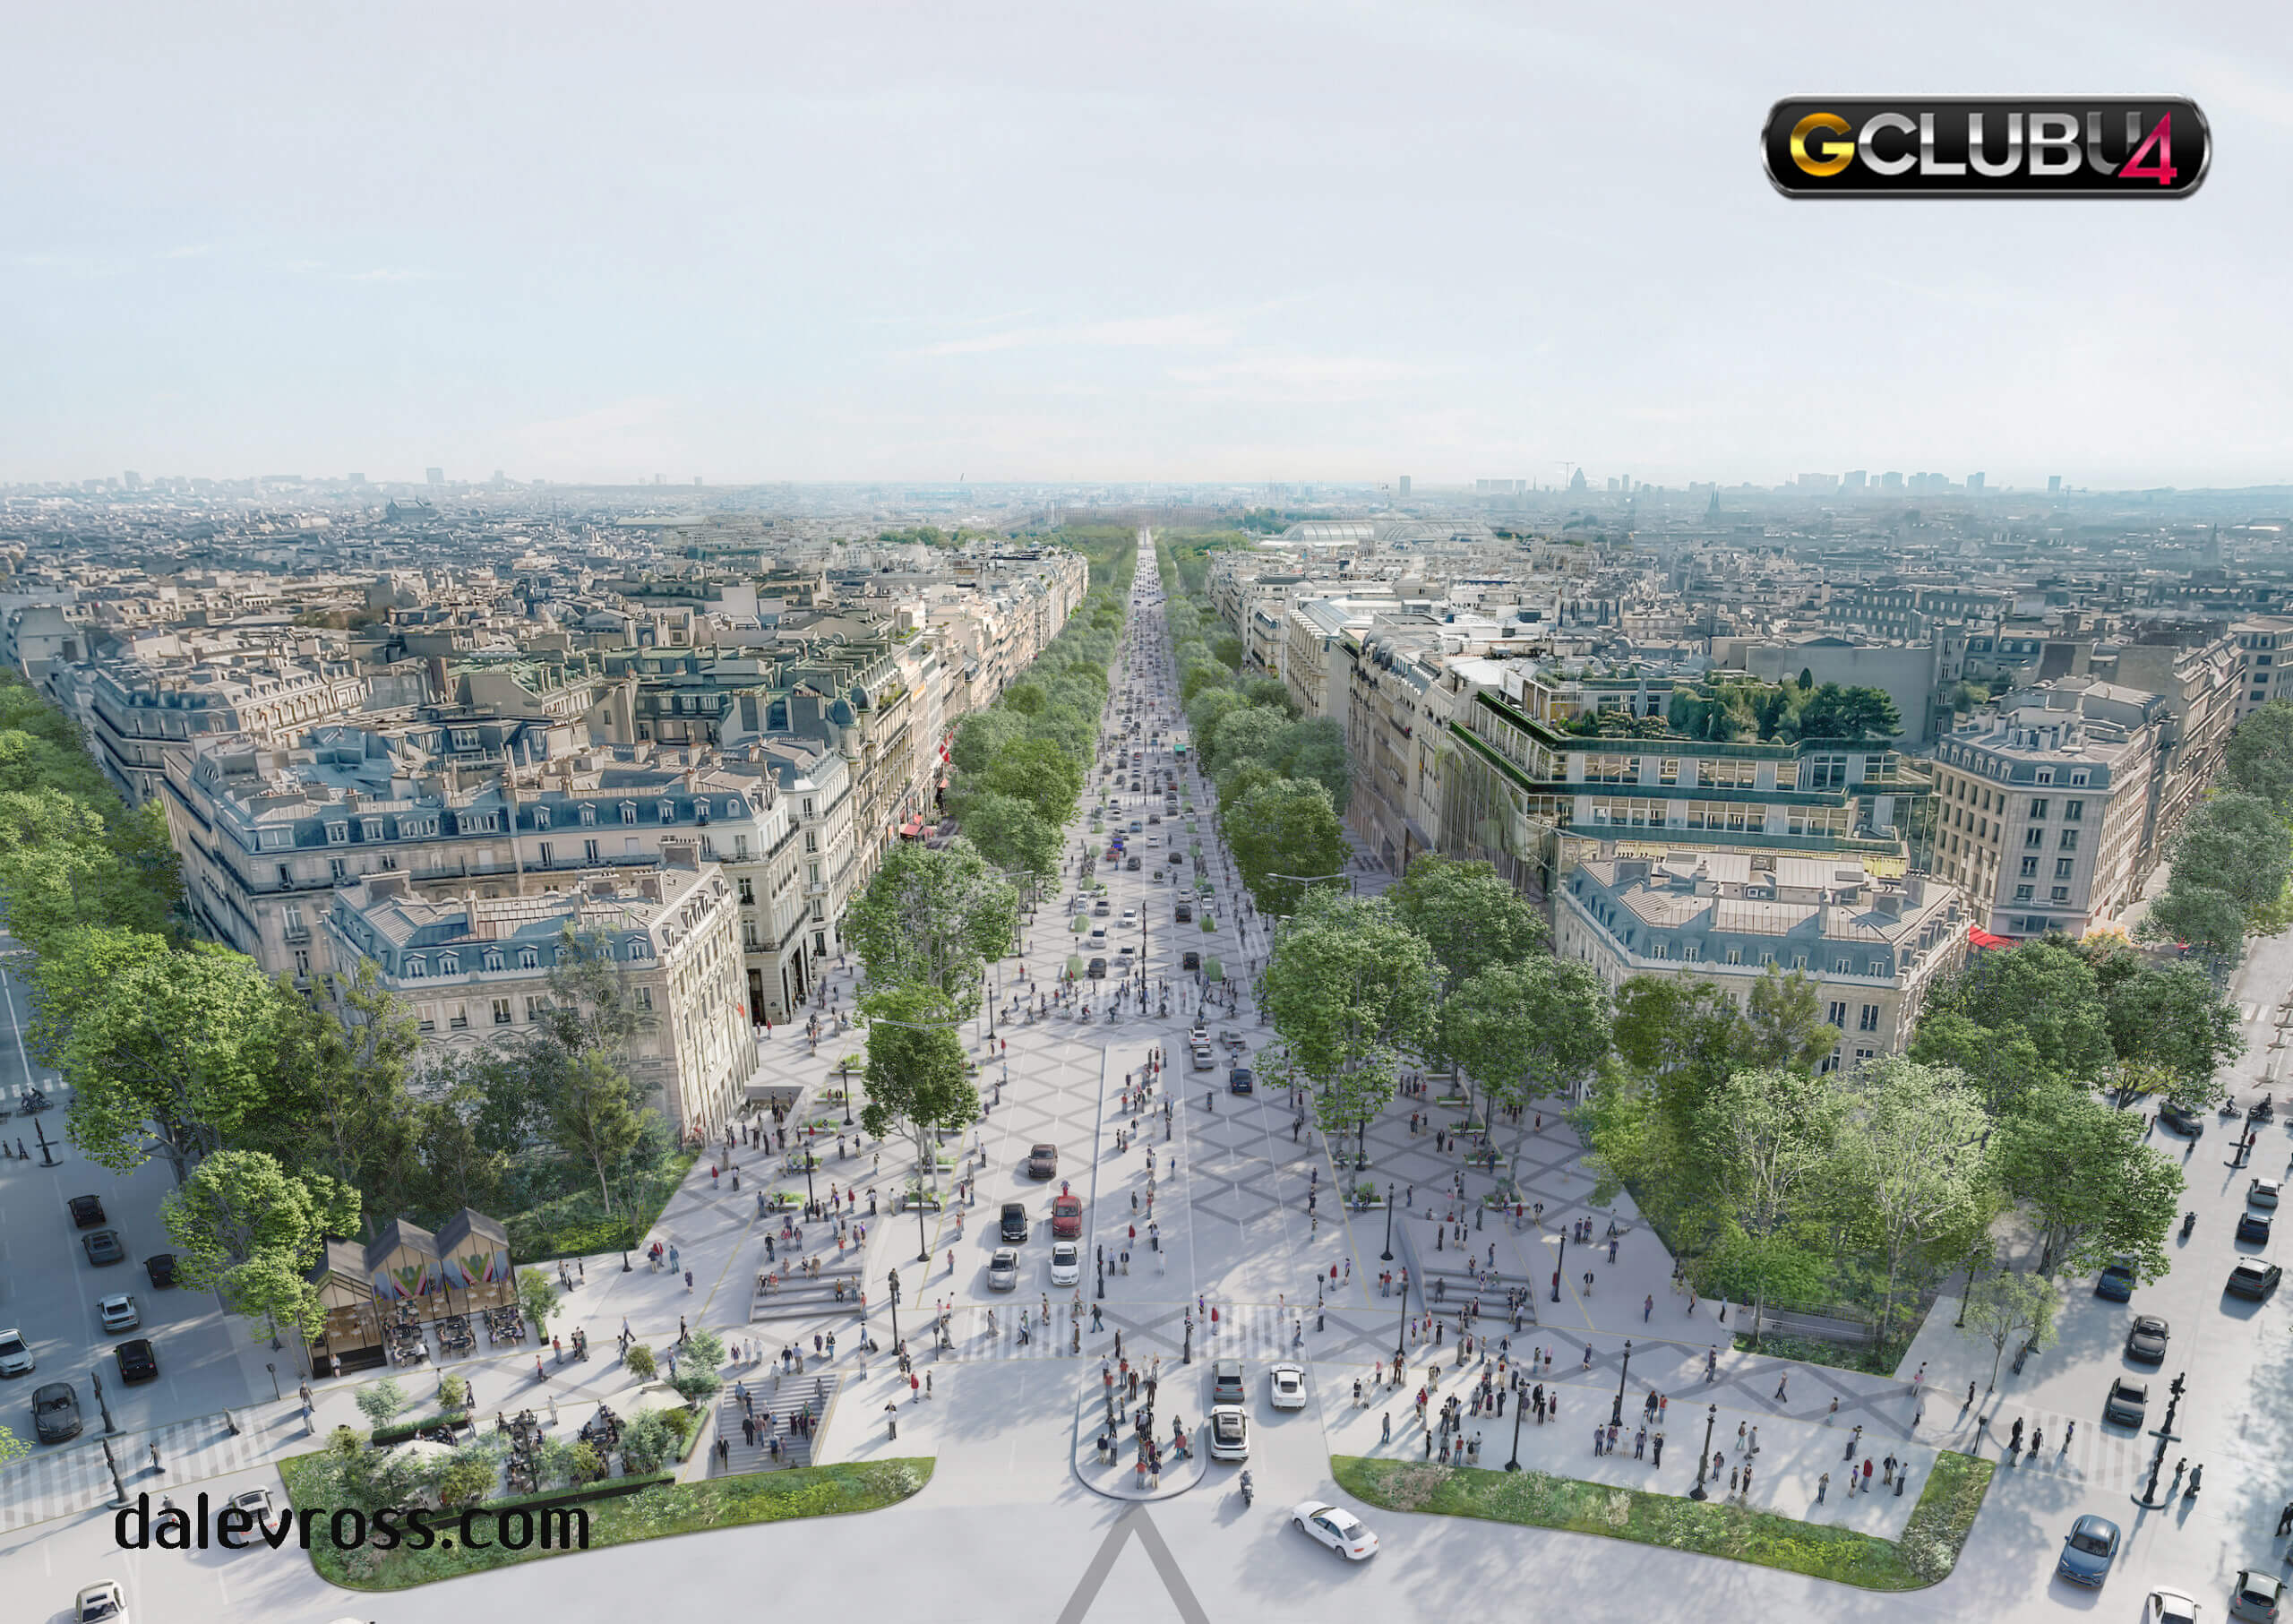 ถนนที่มีชื่อเสียงที่สุดของปารีสกำลังจะกลายเป็นสวนขนาดใหญ่ในเมือง